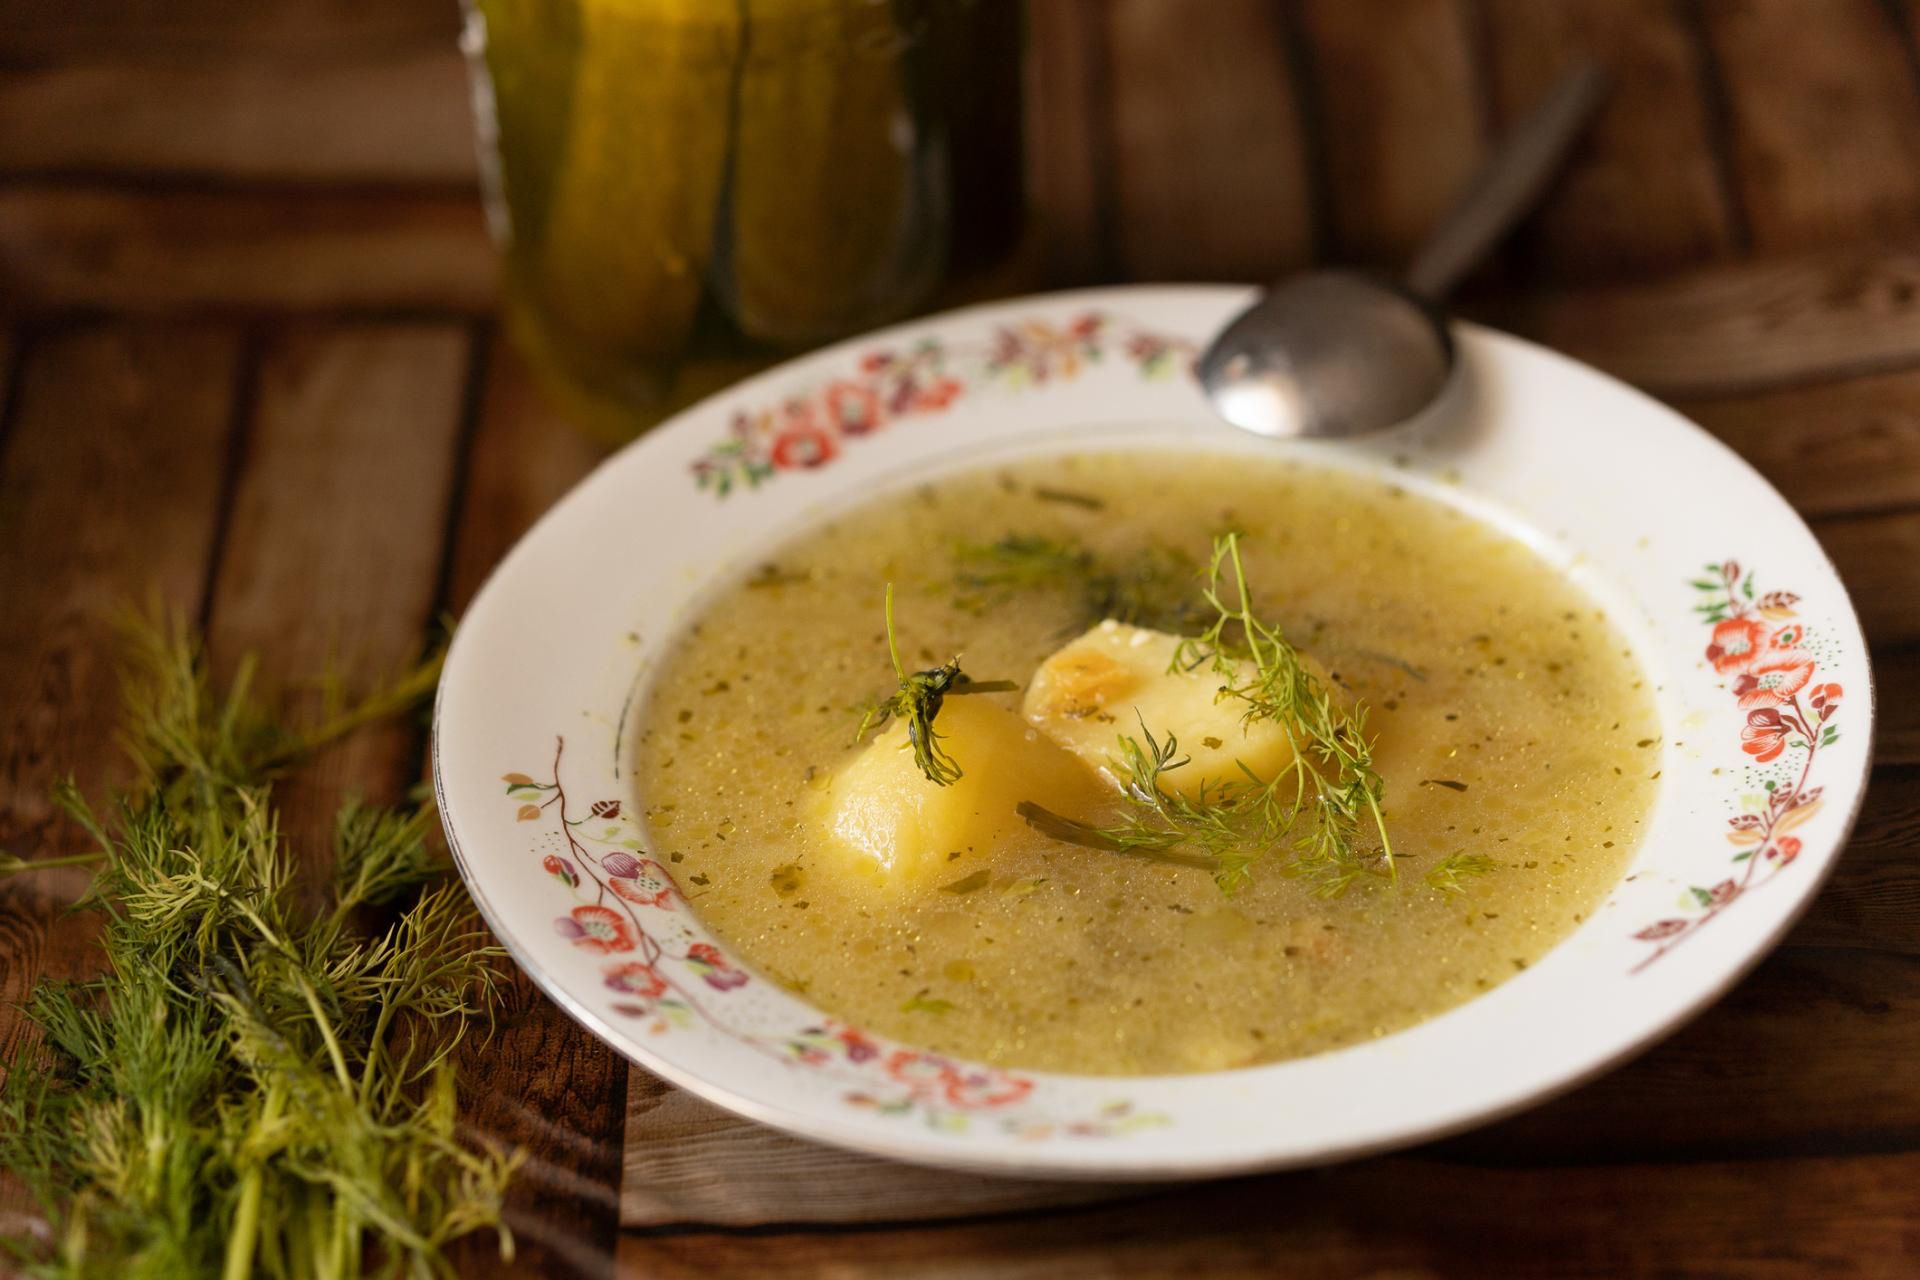 niedoceniana polska zupa. wspiera jelita, nerki, chroni przed chorobami